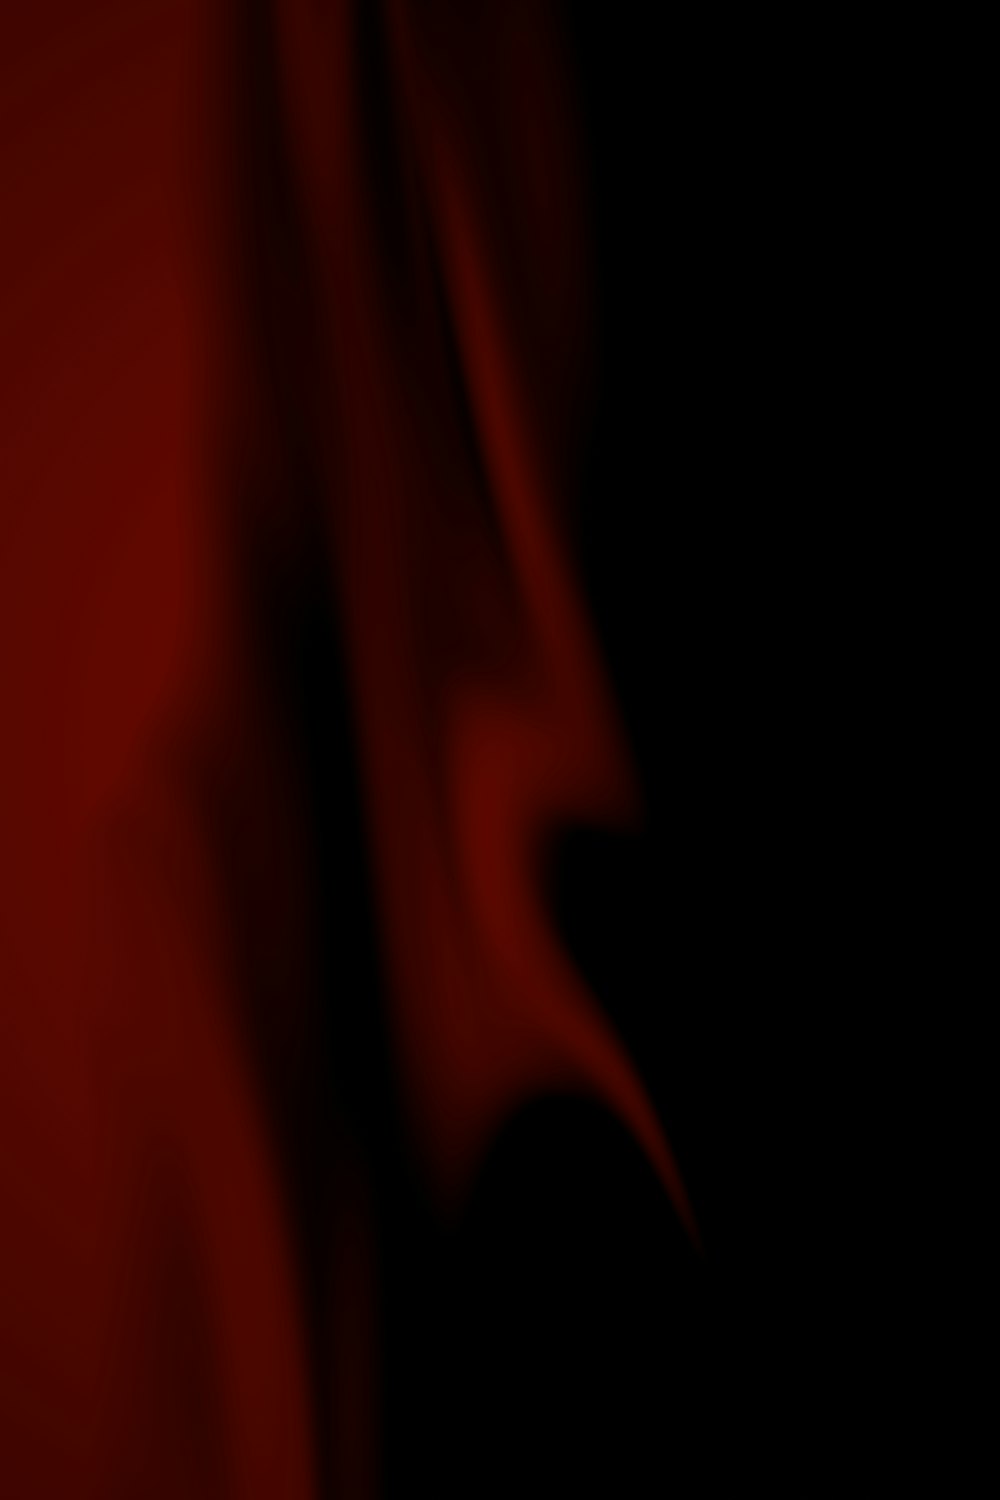 una imagen borrosa de una tela roja sobre un fondo negro